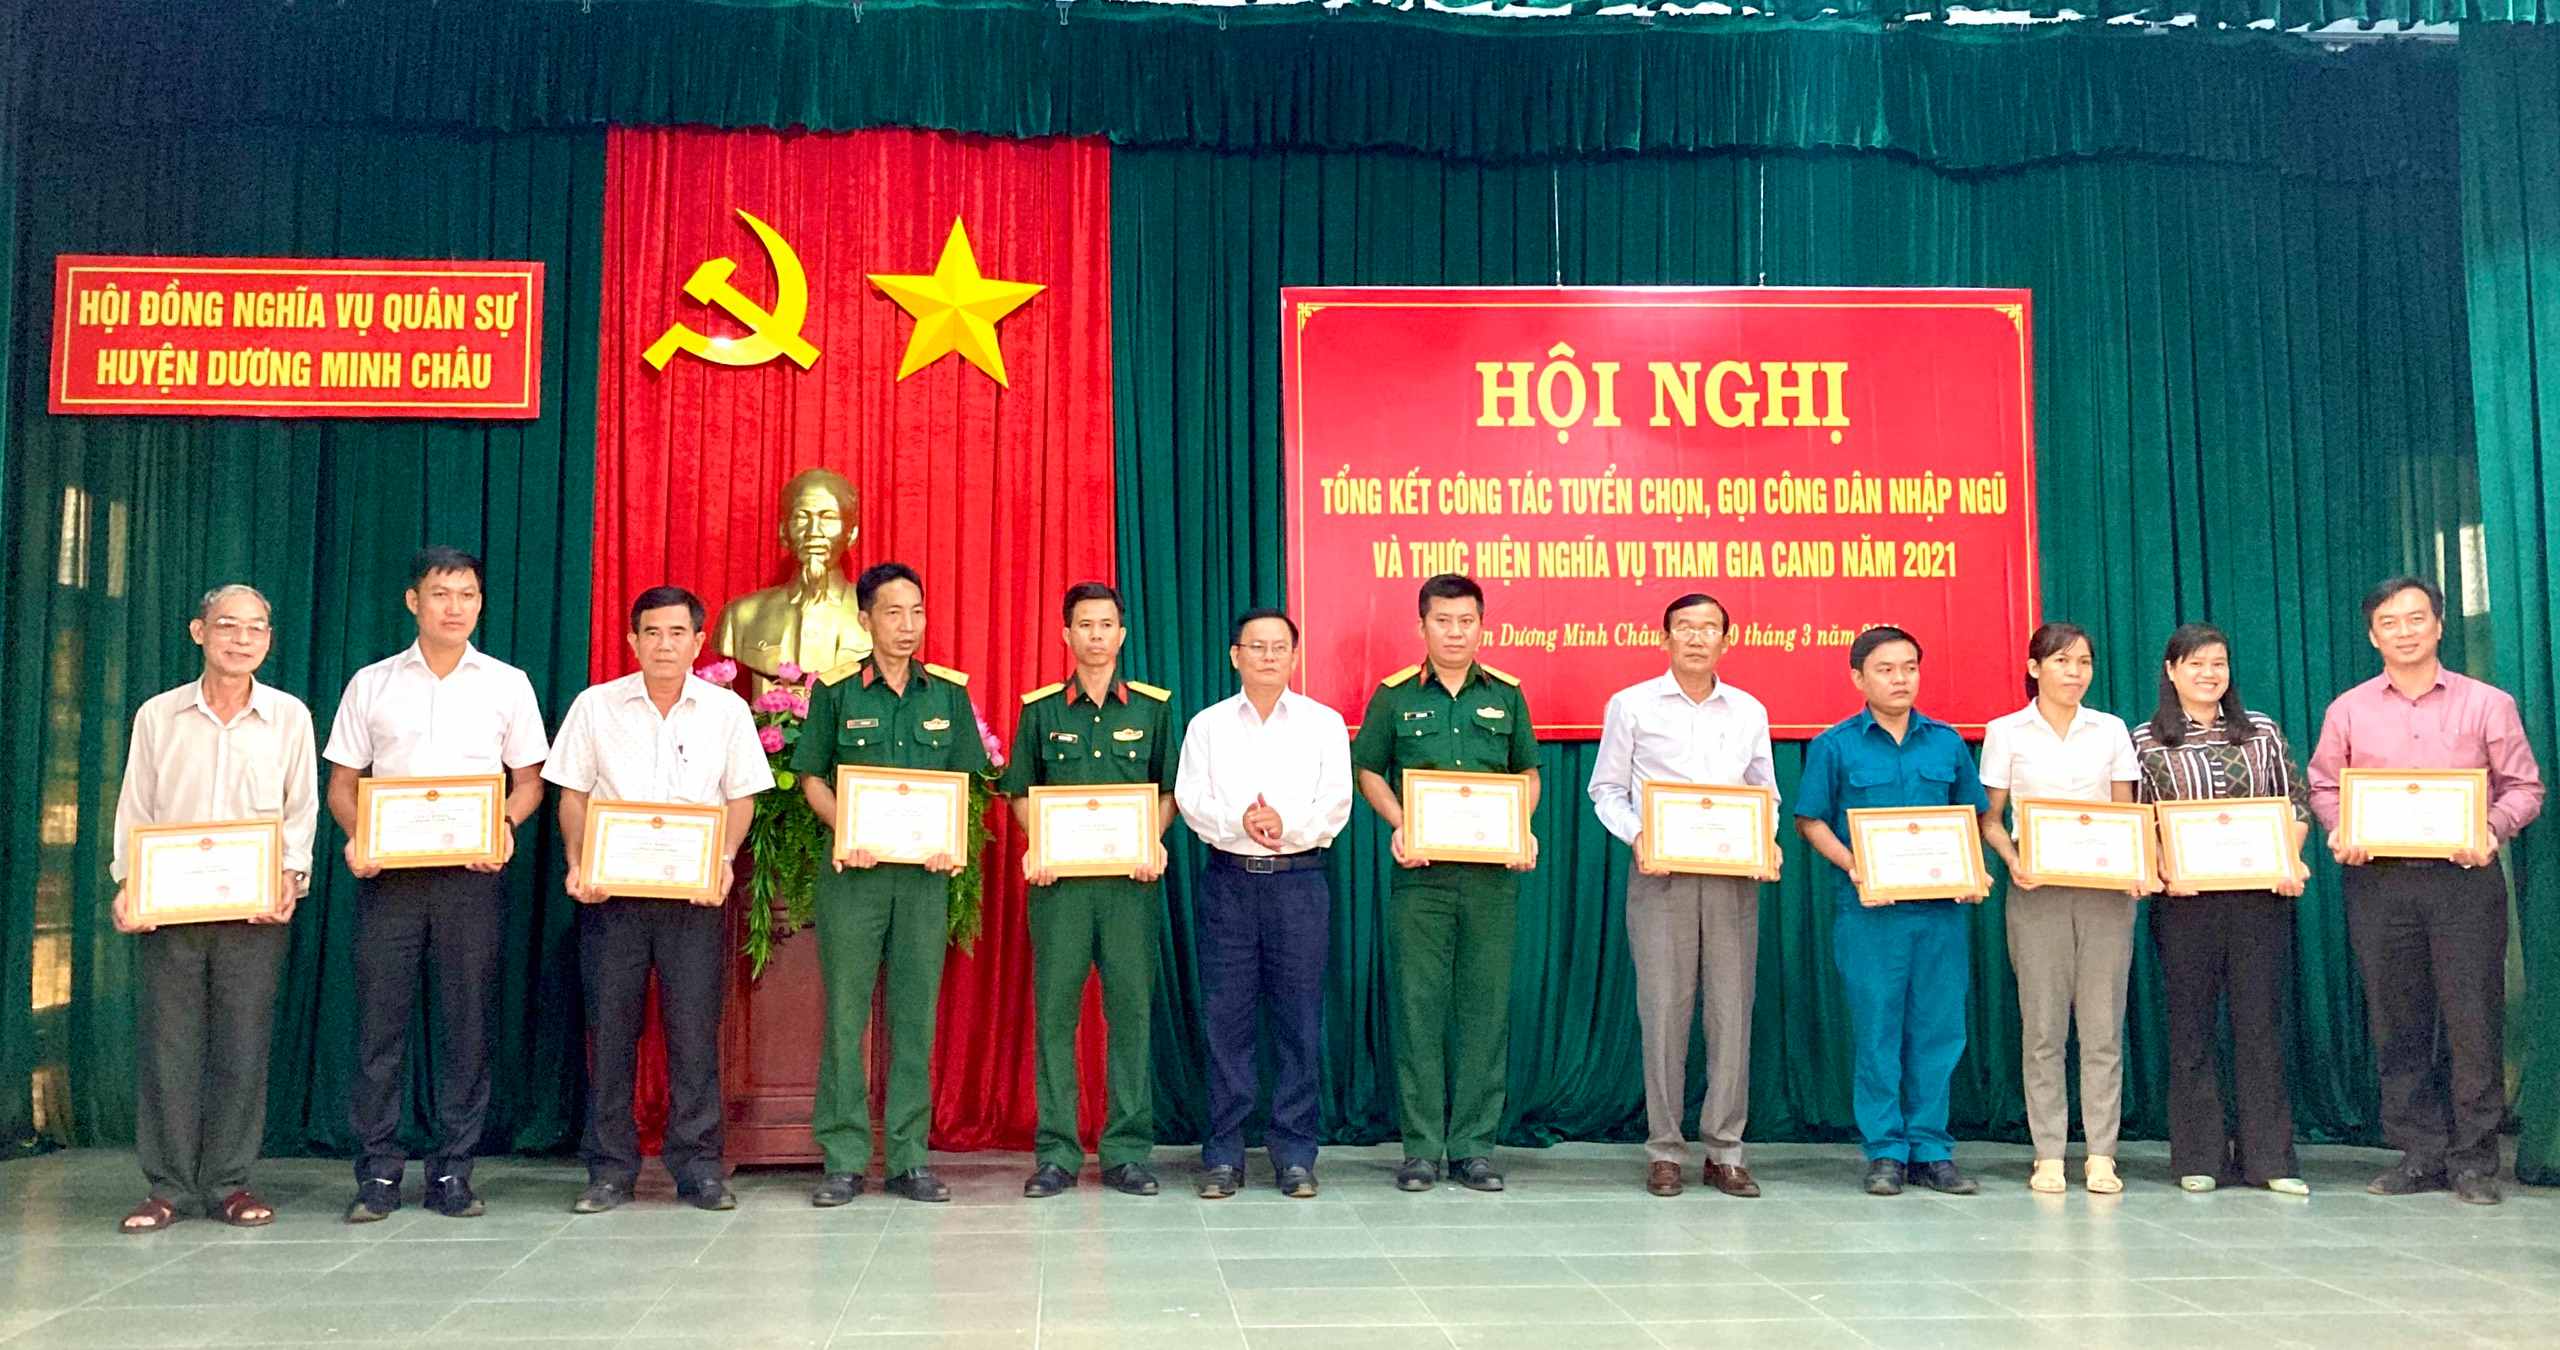 Ban Chỉ huy Quân sự huyện Dương Minh Châu: Tổng kết công tác tuyển chọn, gọi công dân nhập ngũ và thực hiện nghĩa vụ tham gia công an nhân dân năm 2021